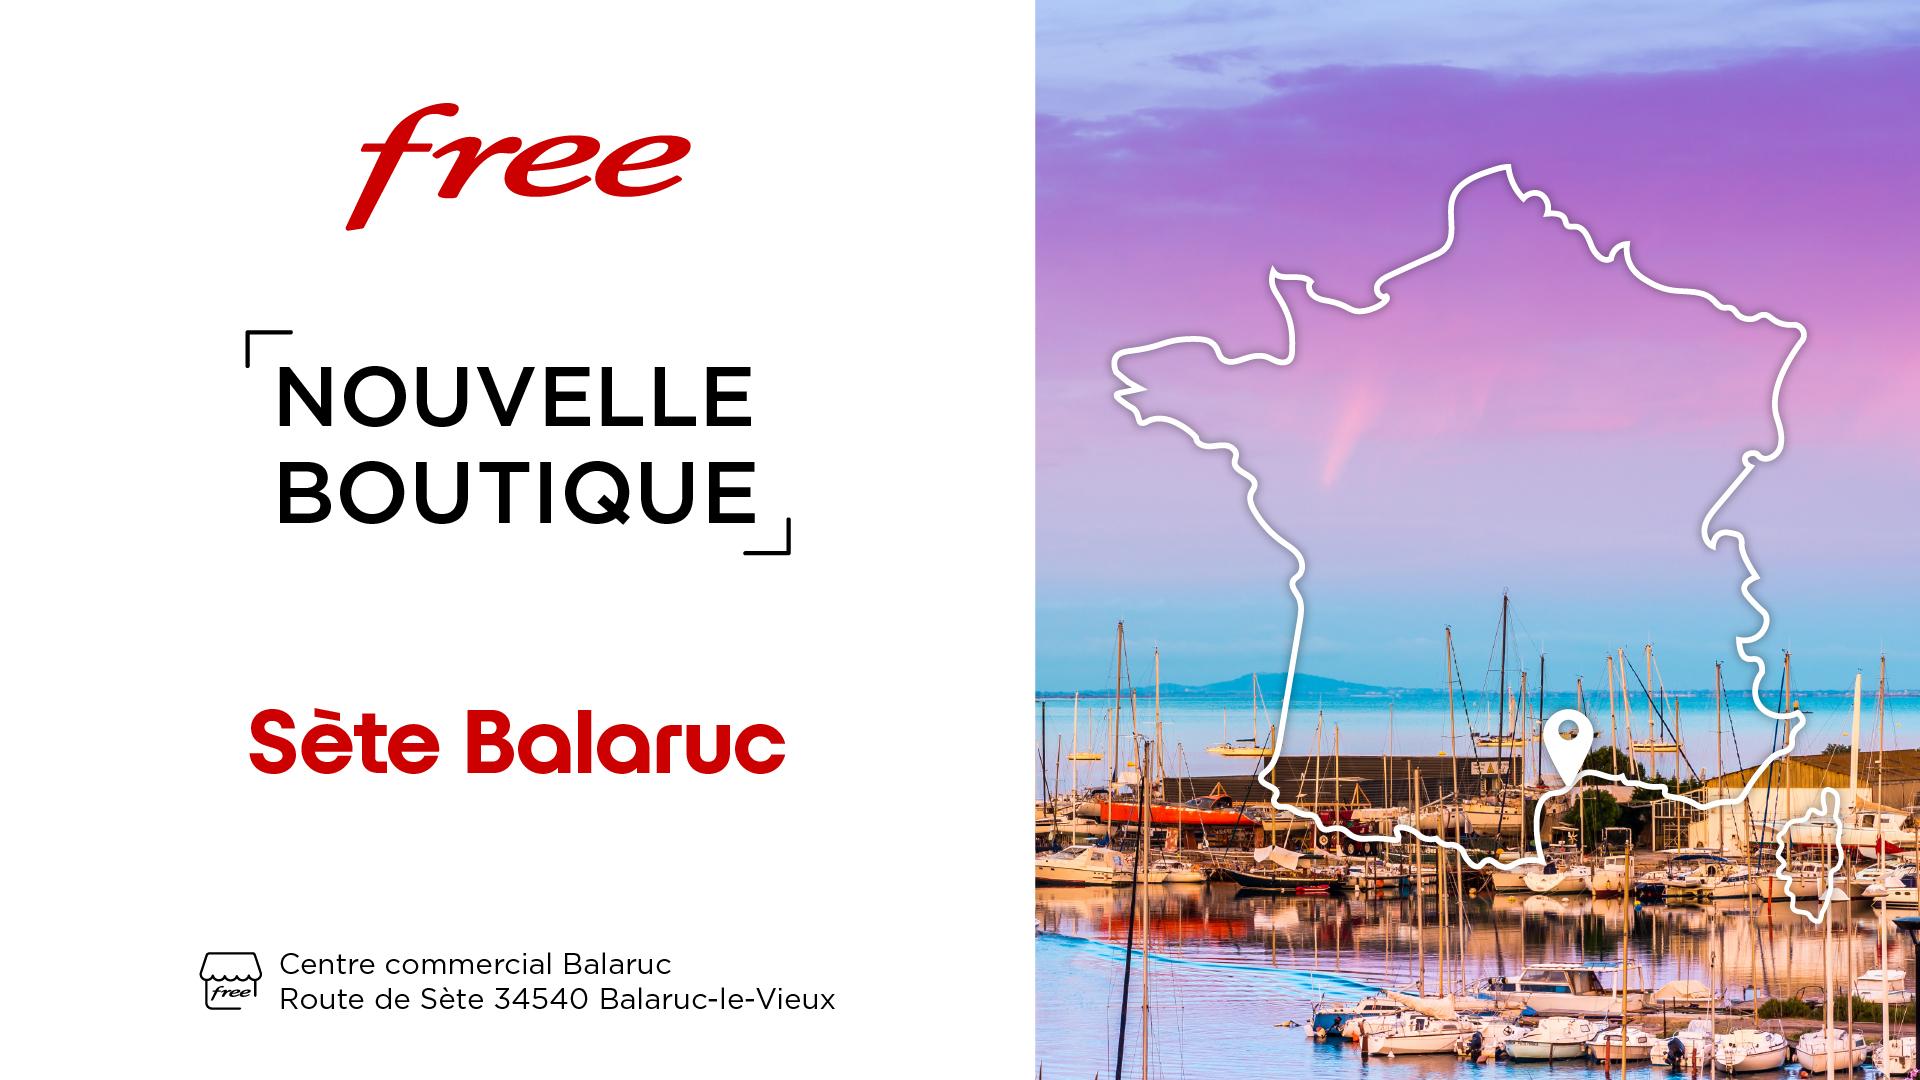 Boutique Free : découvrez la nouvelle boutique Free de Sète au centre commercial Balaruc